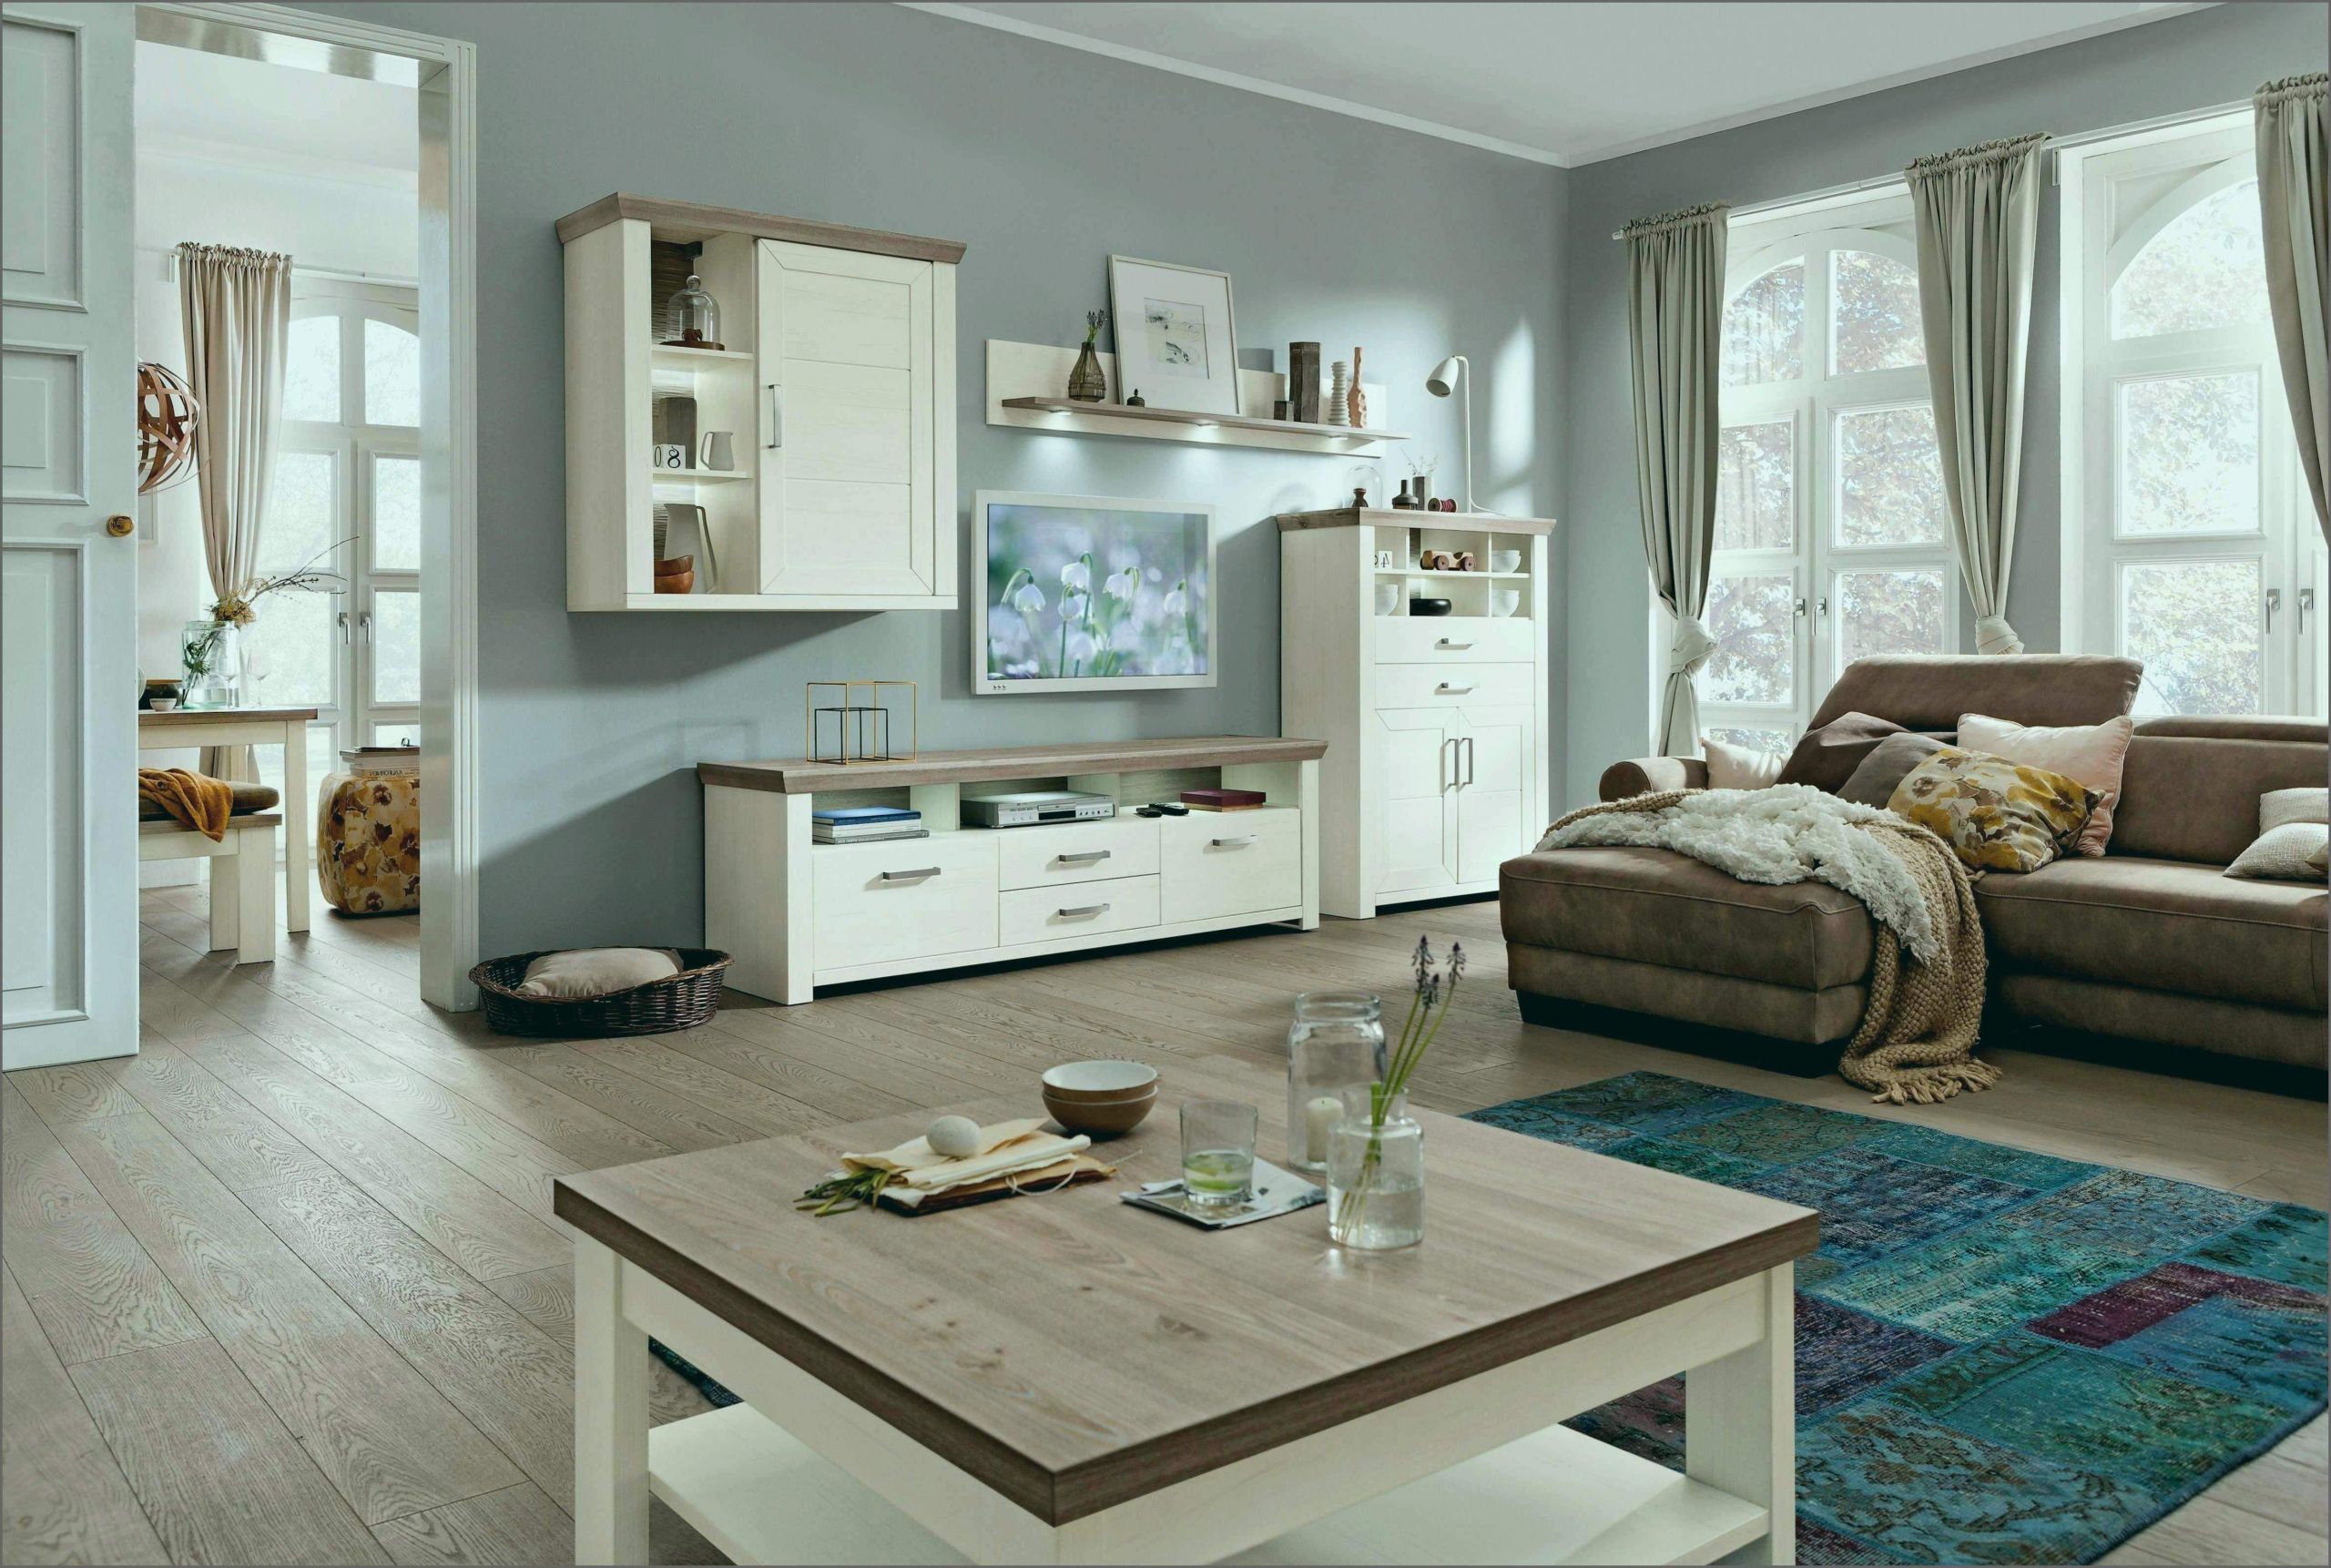 Terrasse Gemütlich Gestalten Luxus 25 Genial Wohnzimmer Ideen Gemütlich Inspirierend